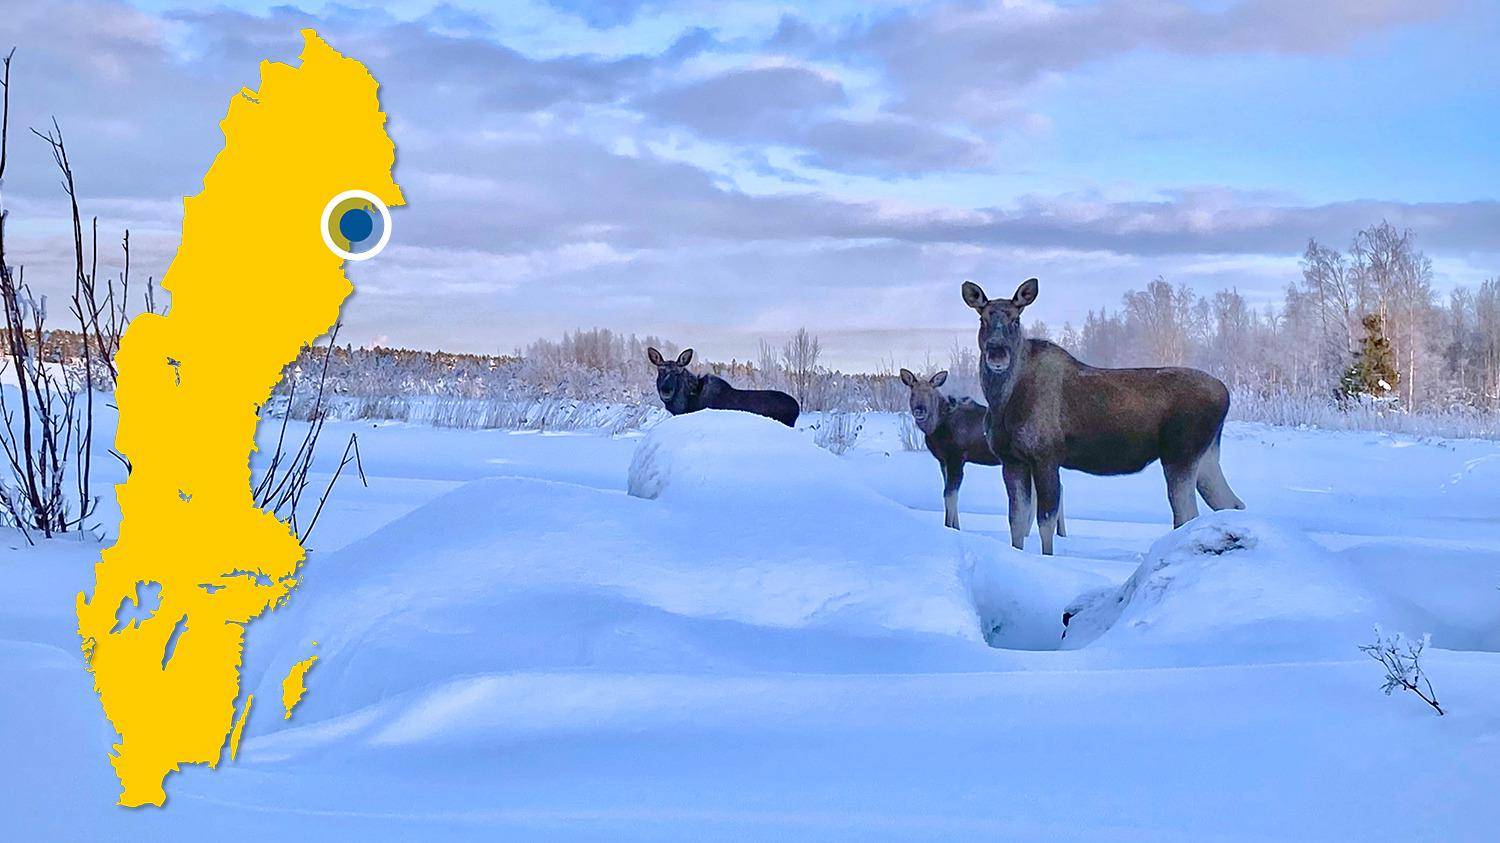 Drei Elche stehen in einer verschneiten Landschaft. Es gibt eine gelbe Karte von Schweden mit einem blauen Punkt, der Kallax markiert.